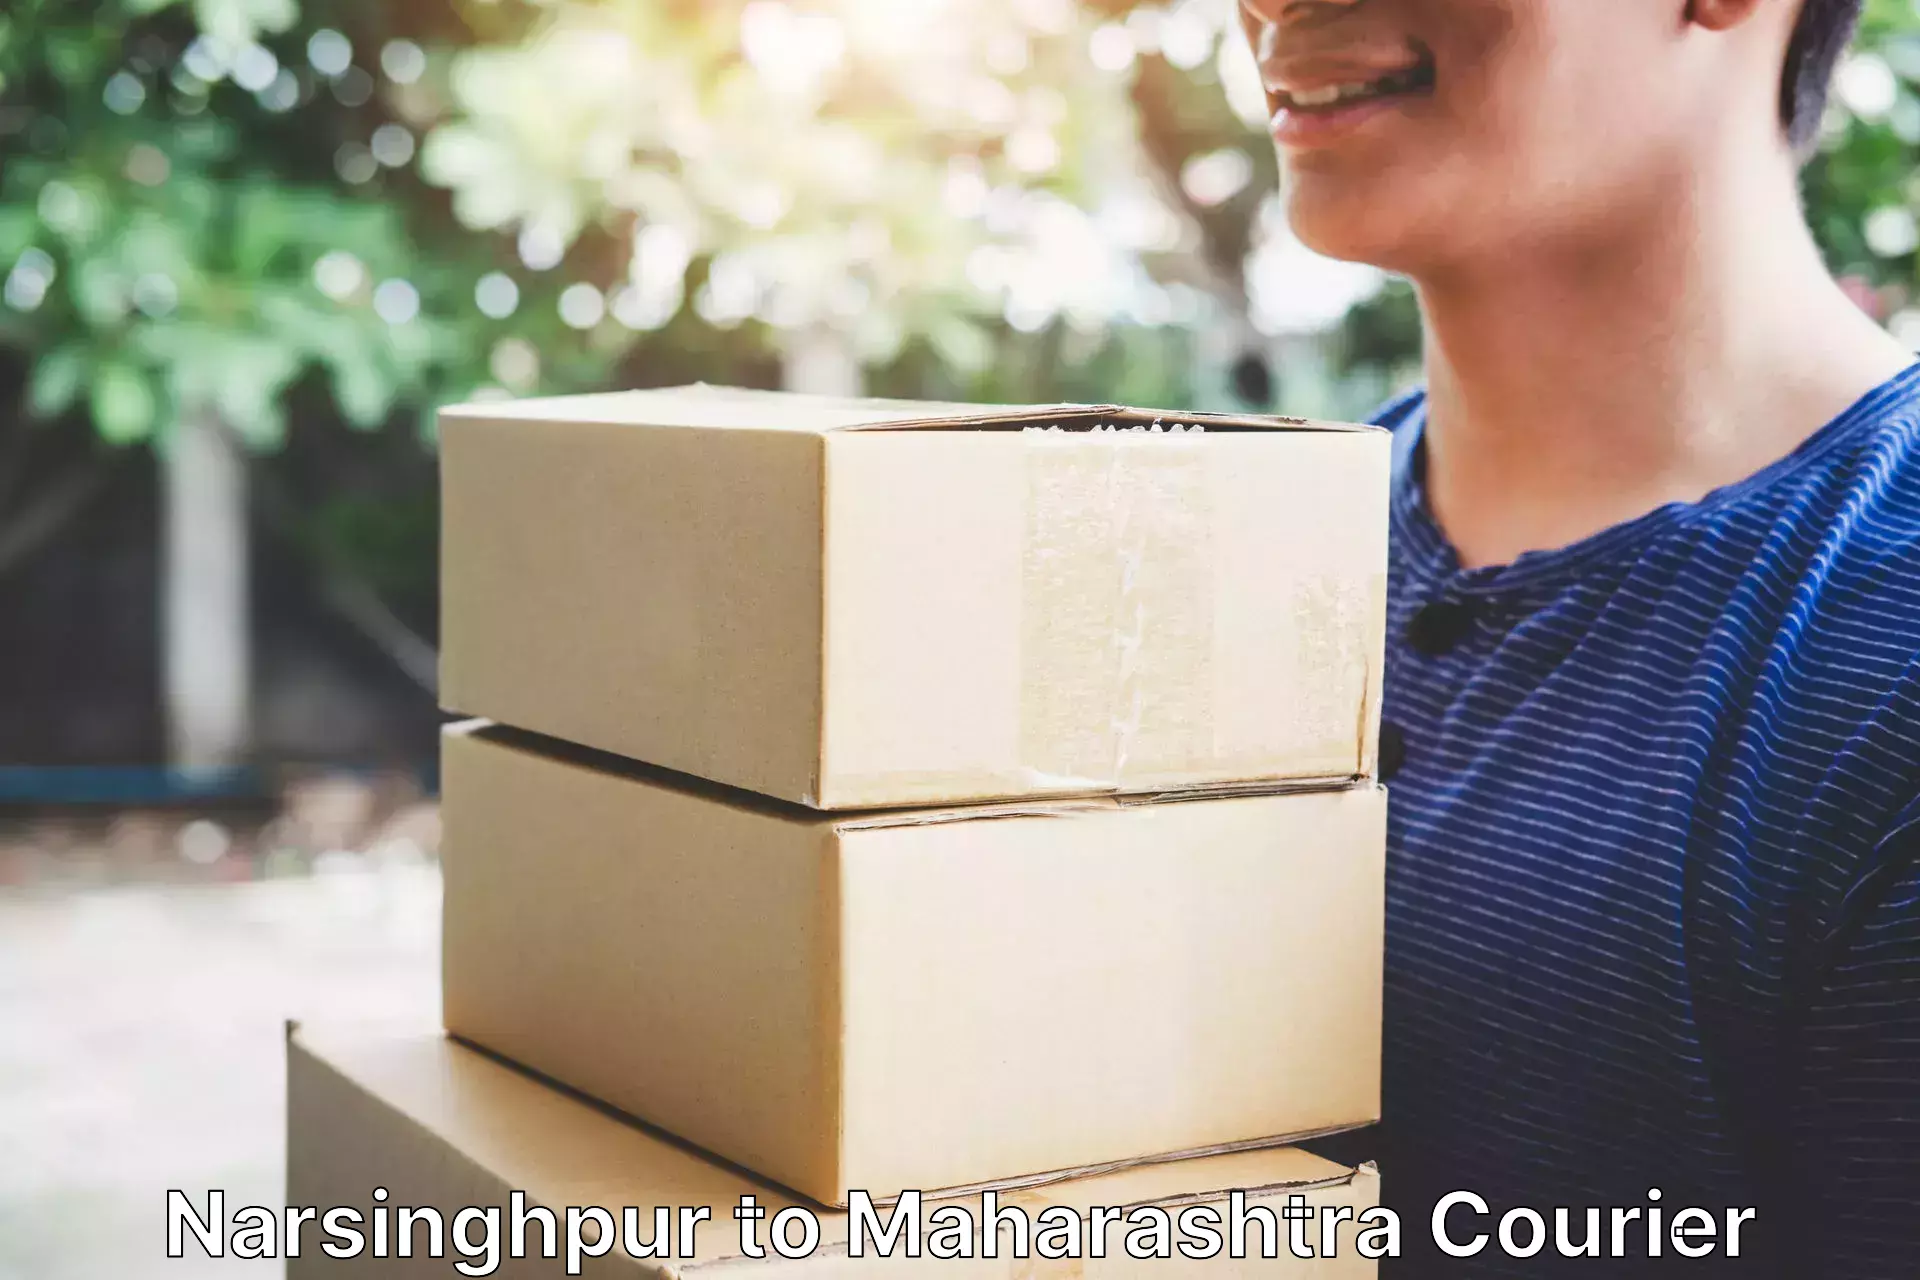 Reliable parcel services Narsinghpur to Maharashtra